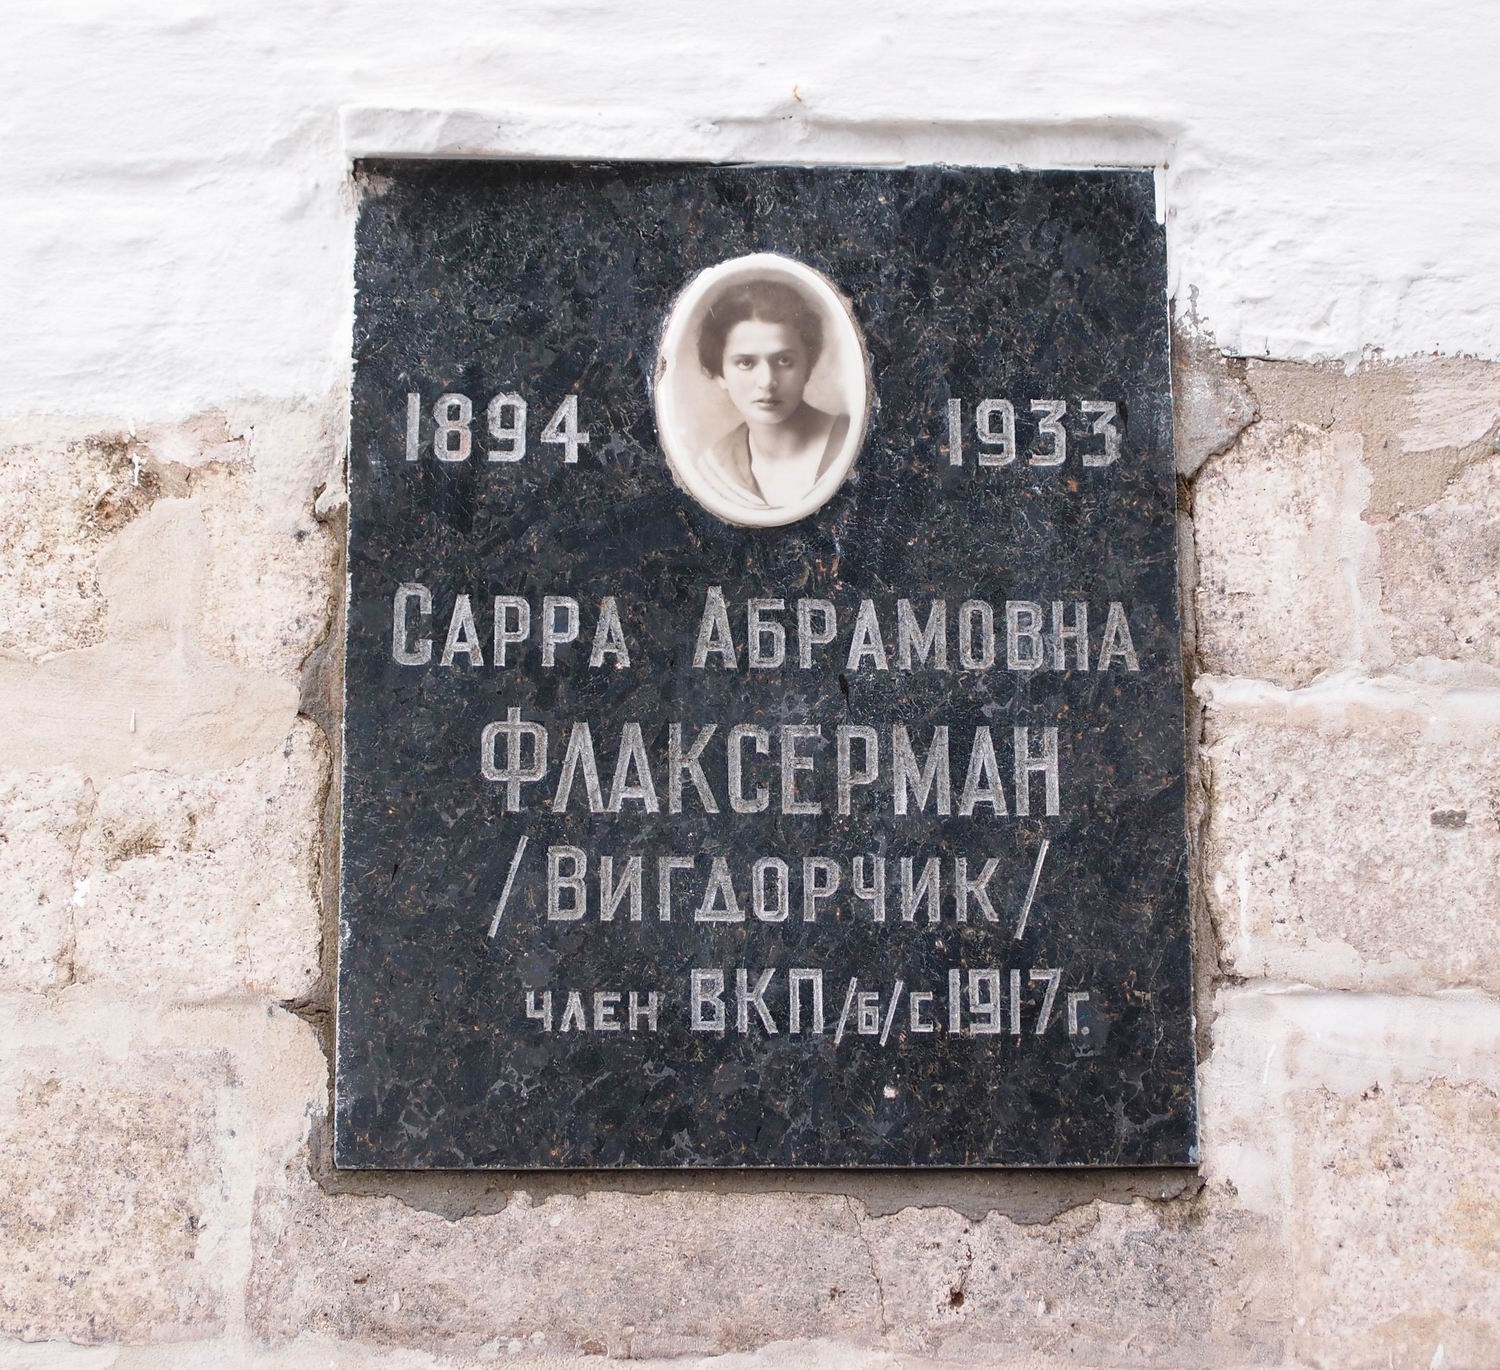 Плита на нише Флаксерман С.А. (1894-1933), на Новодевичьем кладбище (колумбарий [2]-27). Нажмите левую кнопку мыши, чтобы увидеть вариант до реставрации 2015.